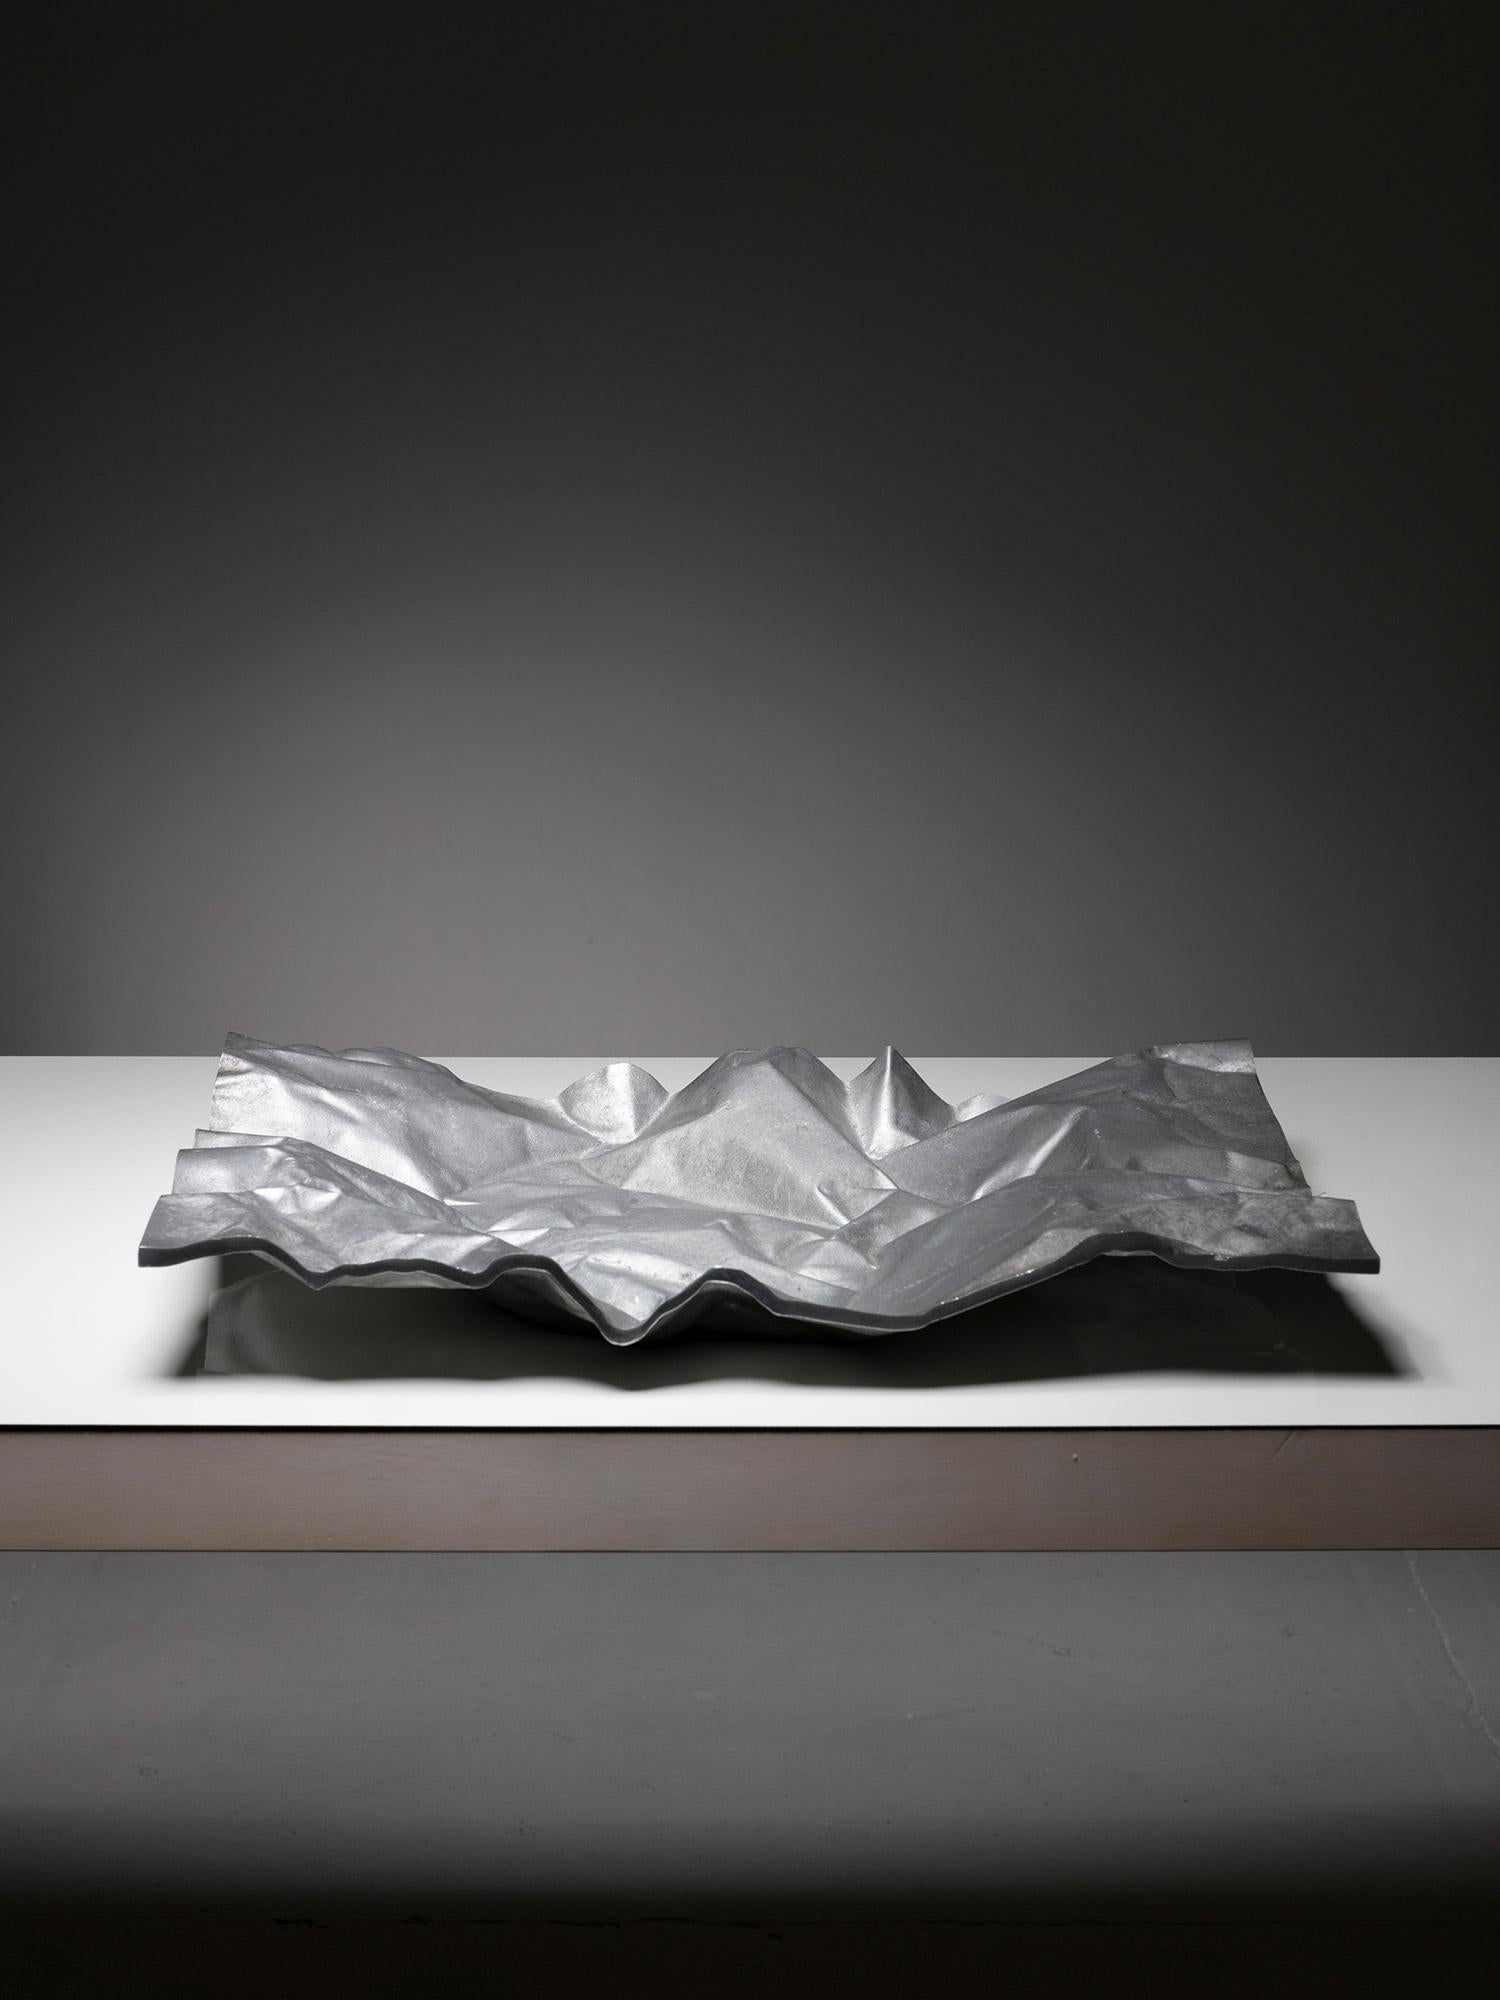 Rare centre de table en aluminium de Nerone Ceccarelli et Giancarlo Patuzzi, Gruppo NP2.
Épaisse pièce de tôle froissée en aluminium, elle présente des liens avec le vase 